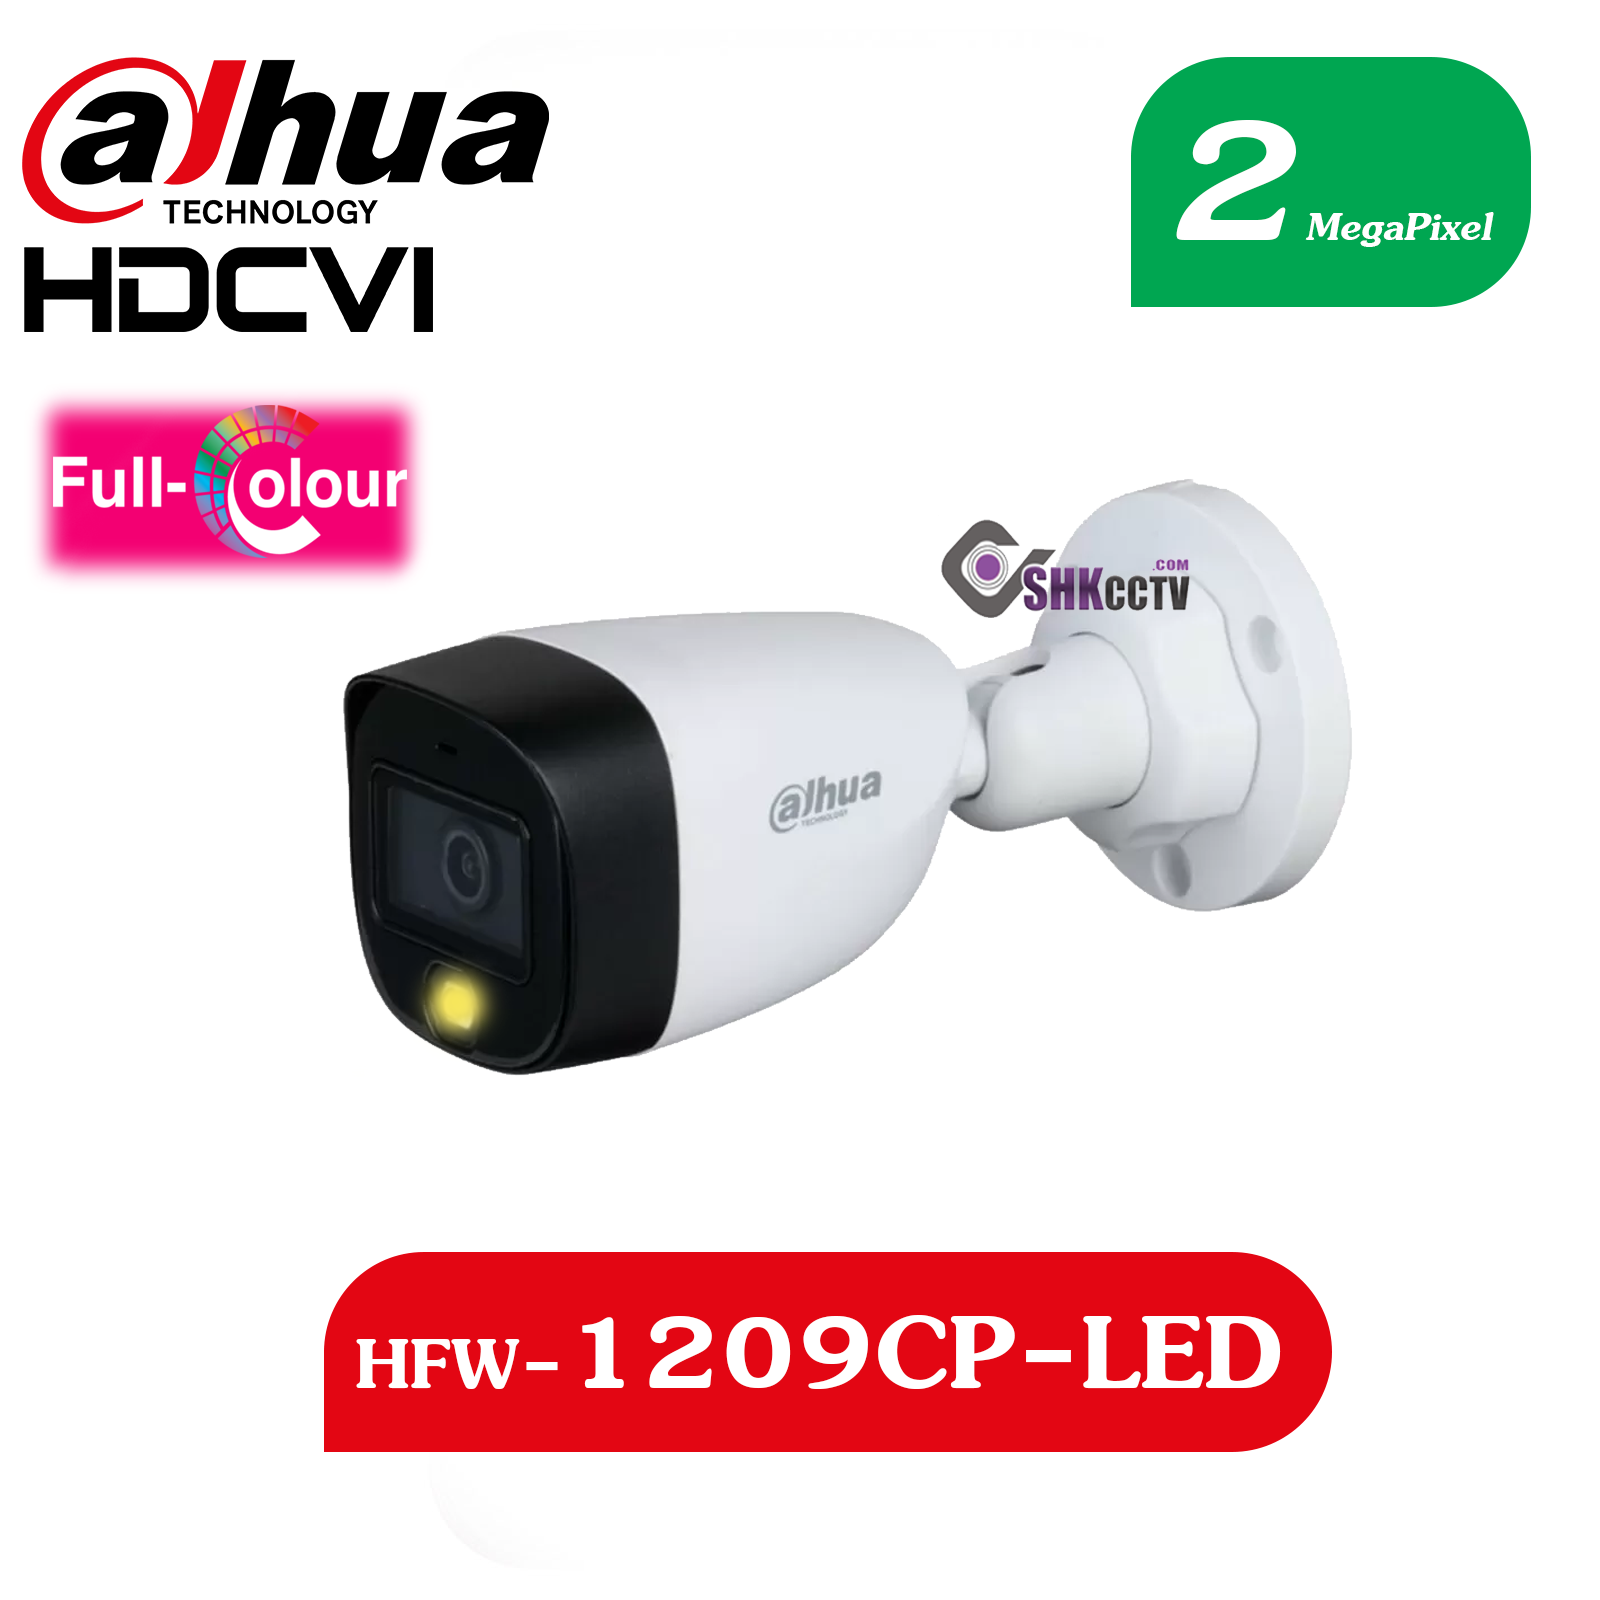 HFW-1209CP-LED